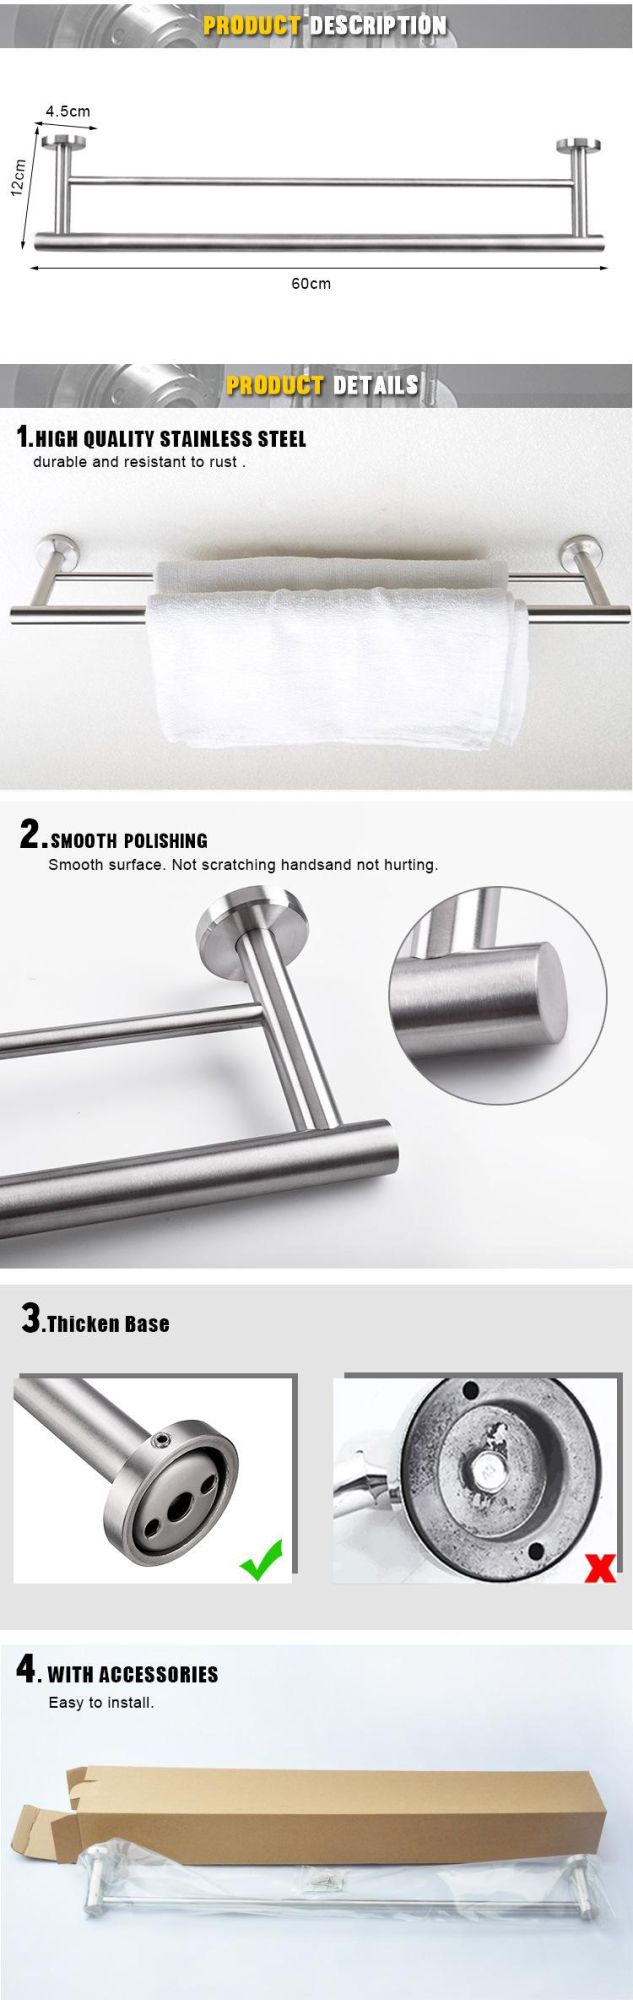 Stainless Steel 2 Tiers Foldable Bathroom Towel Rack